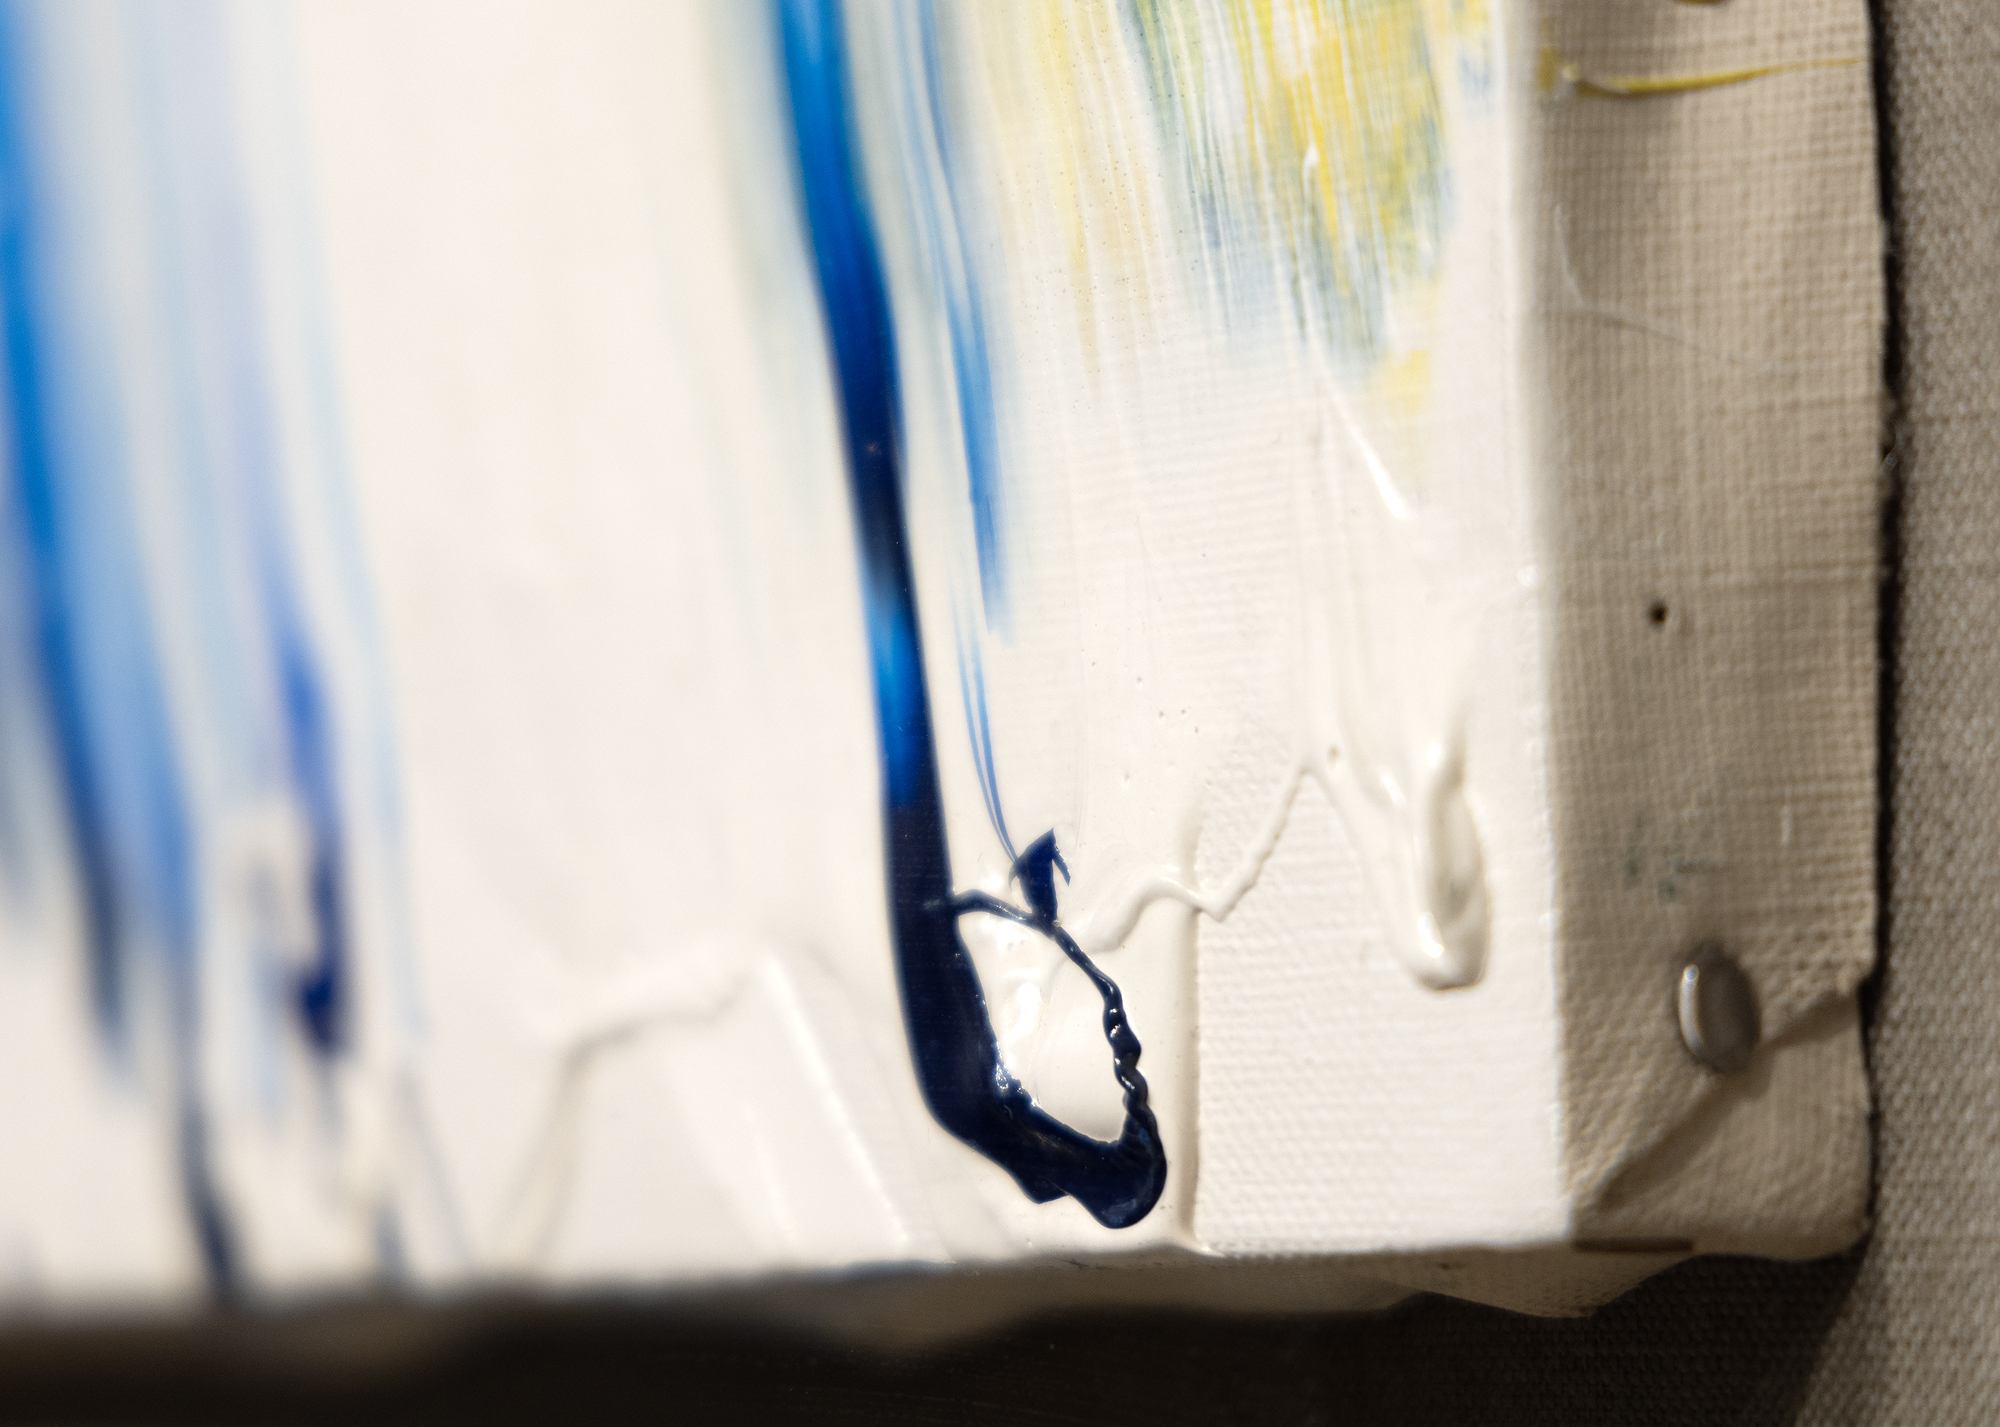 Parmi le groupe d'artistes japonais Gutai qui s'est formé dans les années 1950, aucun n'a travaillé aussi rapidement et sans crainte que Kazuo Shiraga. Ses peintures se caractérisent par des coups de pinceau dynamiques et gestuels, souvent réalisés de manière non conventionnelle. Shiraga est célèbre pour avoir utilisé son corps comme outil de peinture, appliquant souvent la peinture sur la toile ou le papier avec ses pieds, tout en étant suspendu à une corde. Les textures sont généralement épaisses, mais toujours très tactiles, avec des couches de peinture qui ajoutent de la profondeur et de la physicalité à l'œuvre. D'autre part, Taki s'appuie sur des traînées brutes de couleurs bigarrées, évoquant une énergie débridée et un sentiment de liberté et de rébellion pour lequel il est connu, défiant les conventions artistiques traditionnelles et repoussant les limites de l'expression créative.